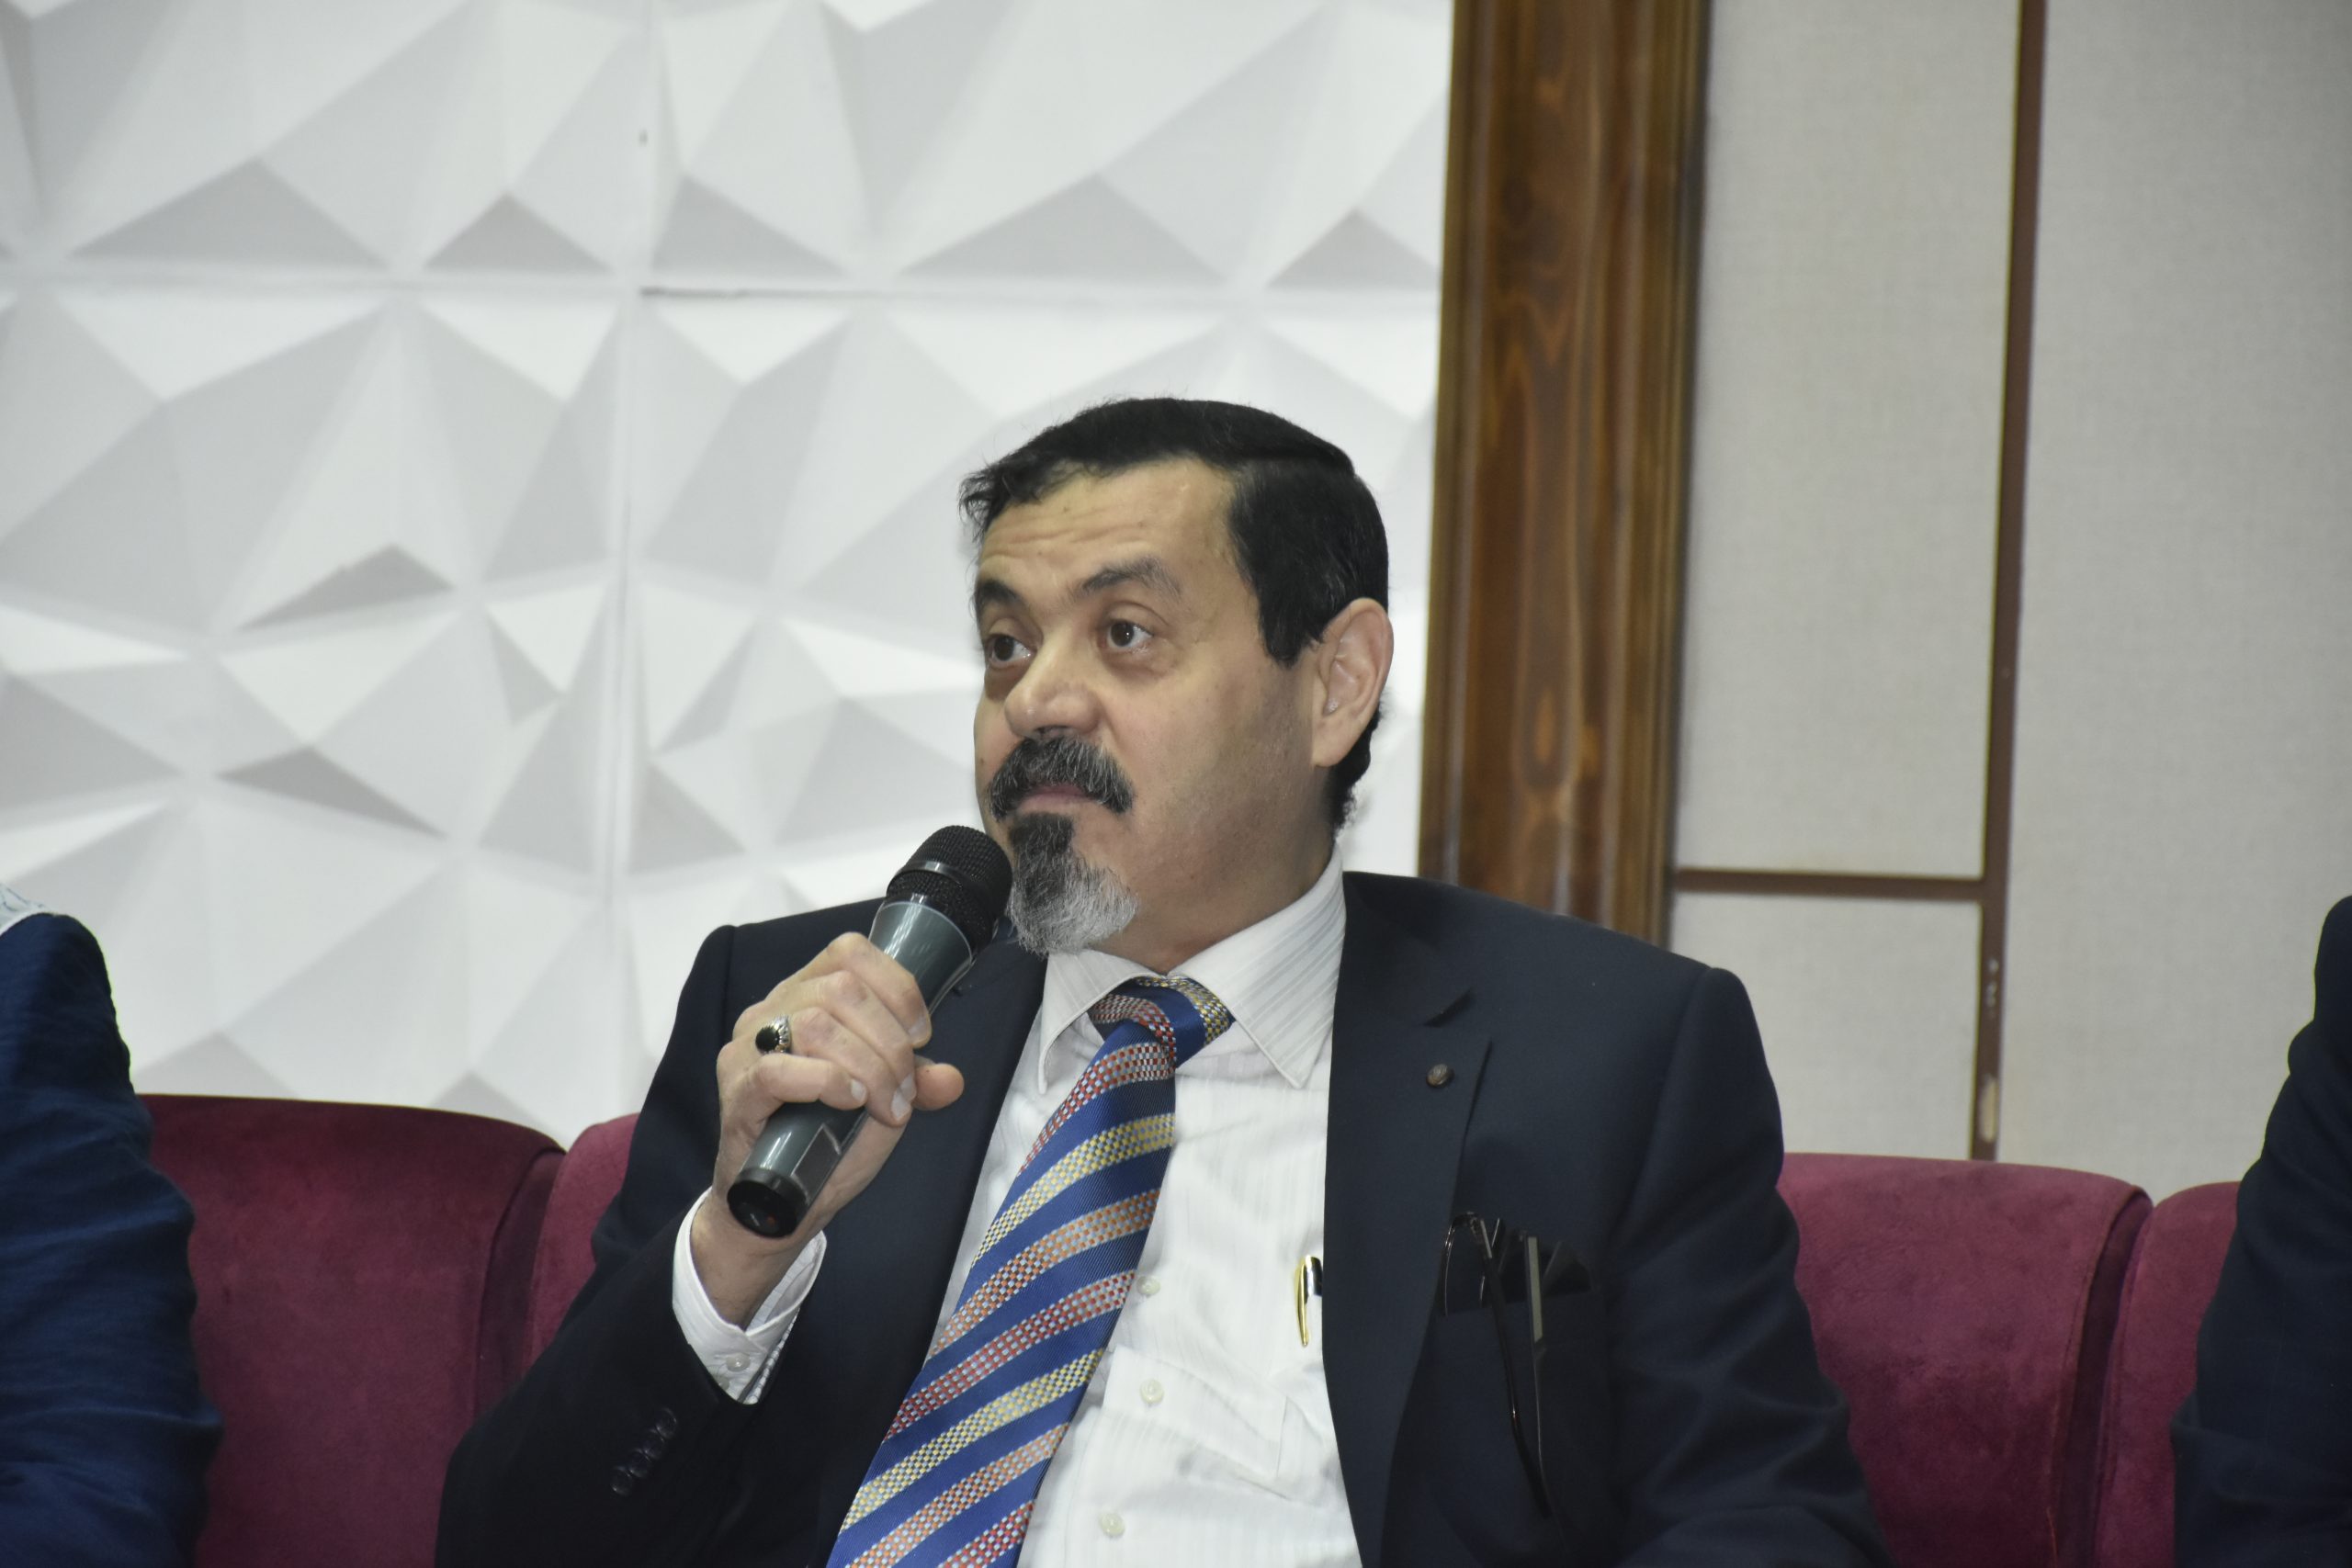 الدكتور سمير القرعيشي نائب رئيس شركة إيجاس لتحول الطاقة و الاستدامة 